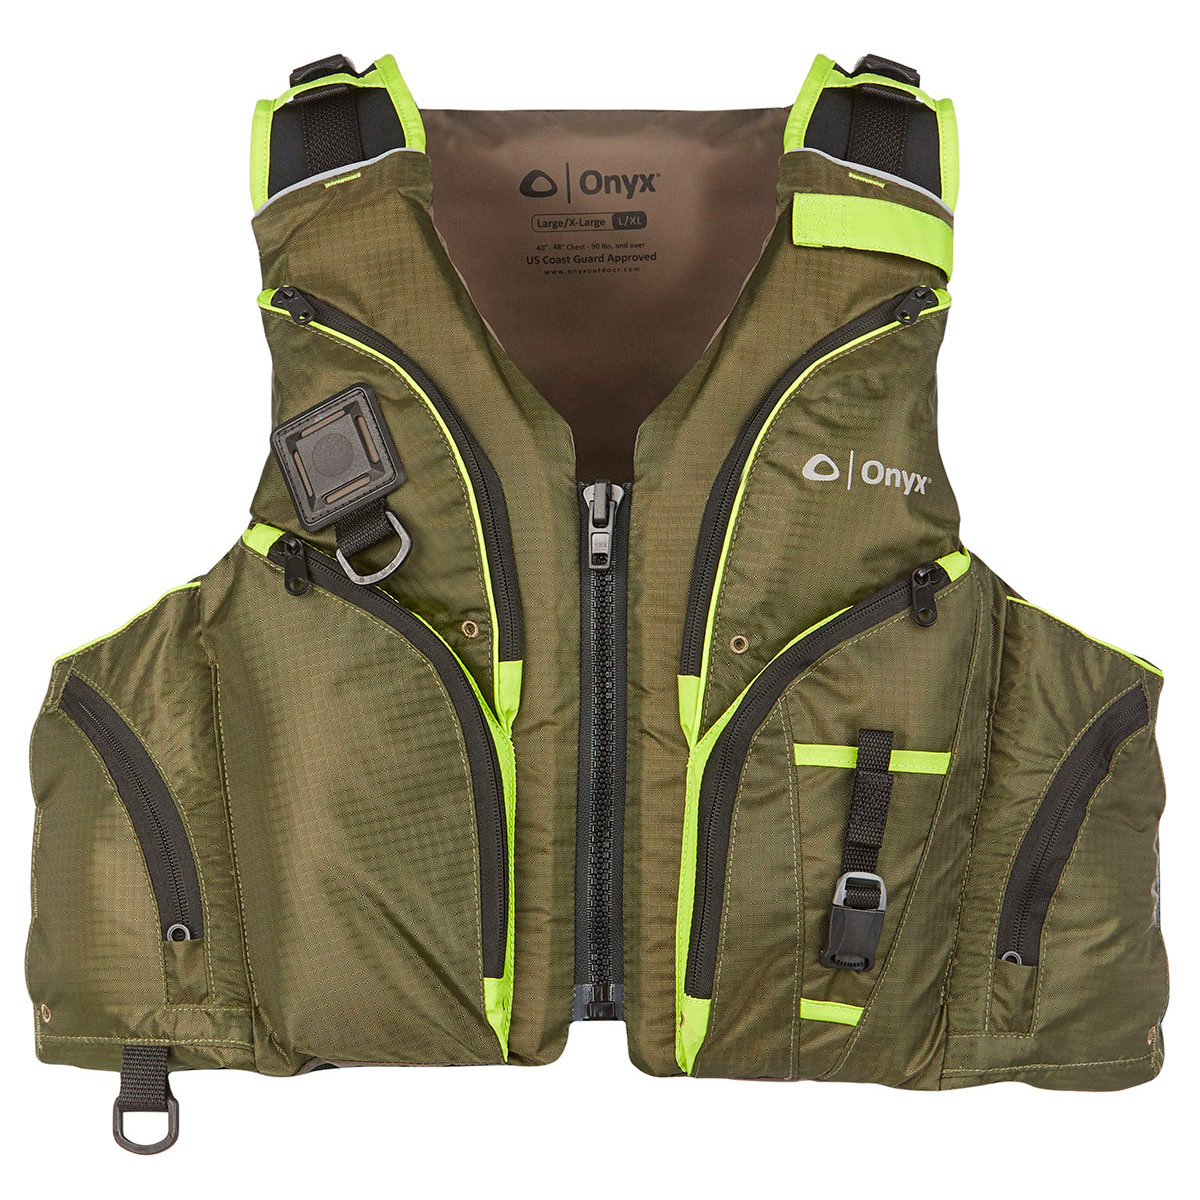 Onyx Adult Select 4XL Life Jacket Fishing Vest Type III USCG Approved 